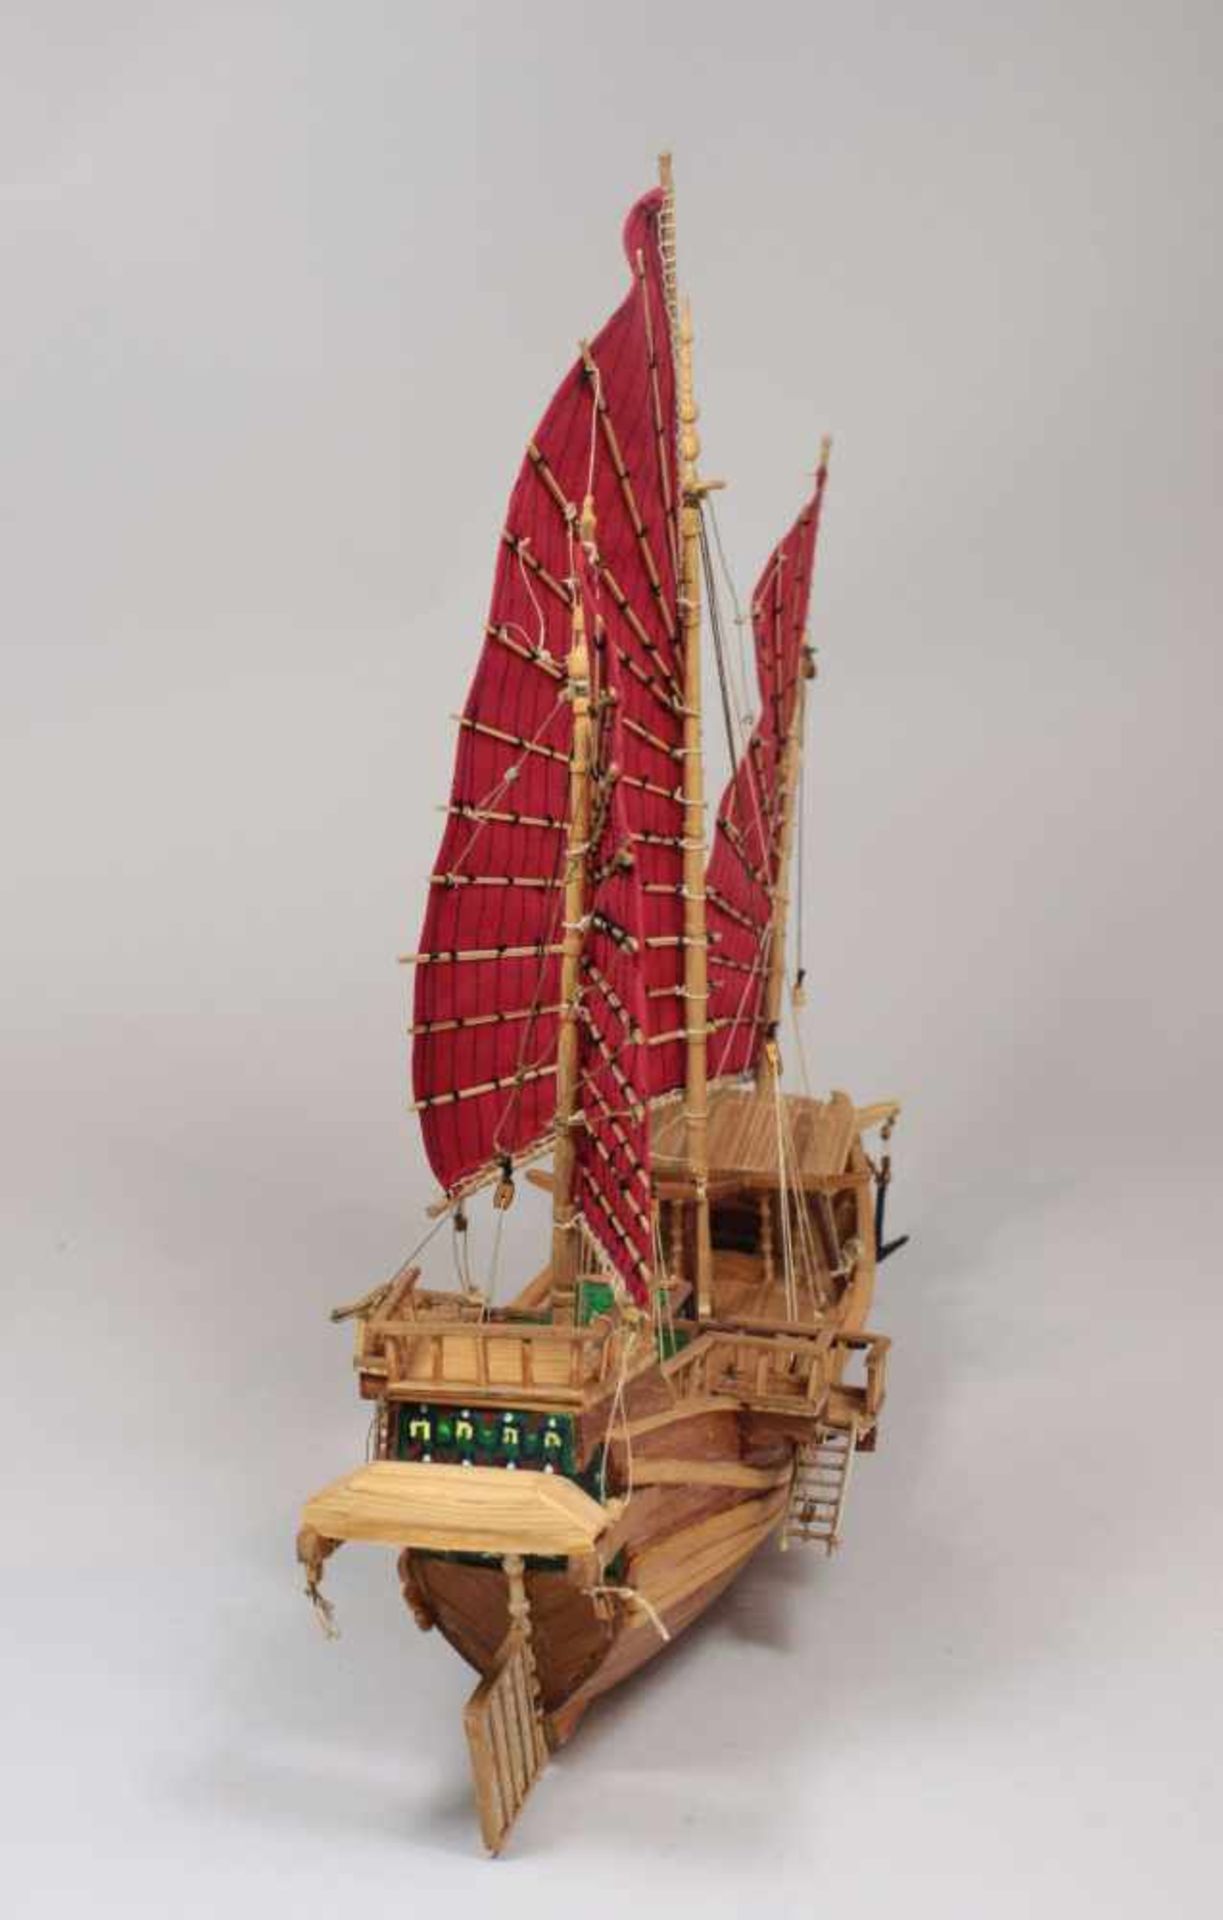 Modellschiff No. 24, Holz, teilweise farbig gefasst, Maßen ca.: 39 x 33 cm. Aus einer Privatsammlung - Bild 2 aus 2